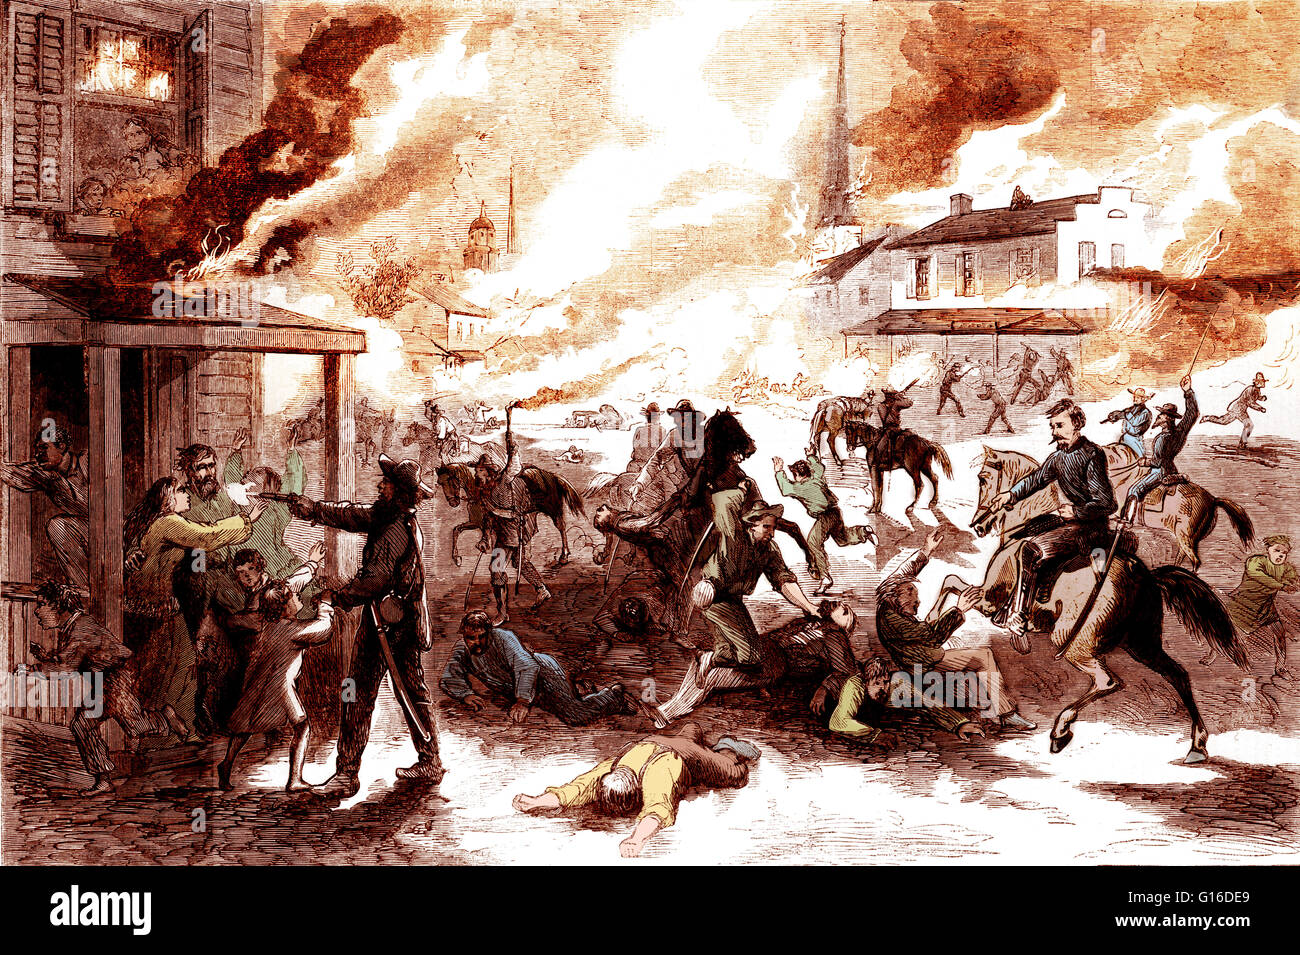 Intitulé : "La destruction de la ville de Lawrence, Kansas, et le massacre de ses habitants par les rebelles de la guérilla, le 21 août 1863.' Gravure fut publiée dans le Harper's Weekly, 5 septembre 1863. William Quantrill's raid sur la ville de l'état-libre Lawrenc Banque D'Images